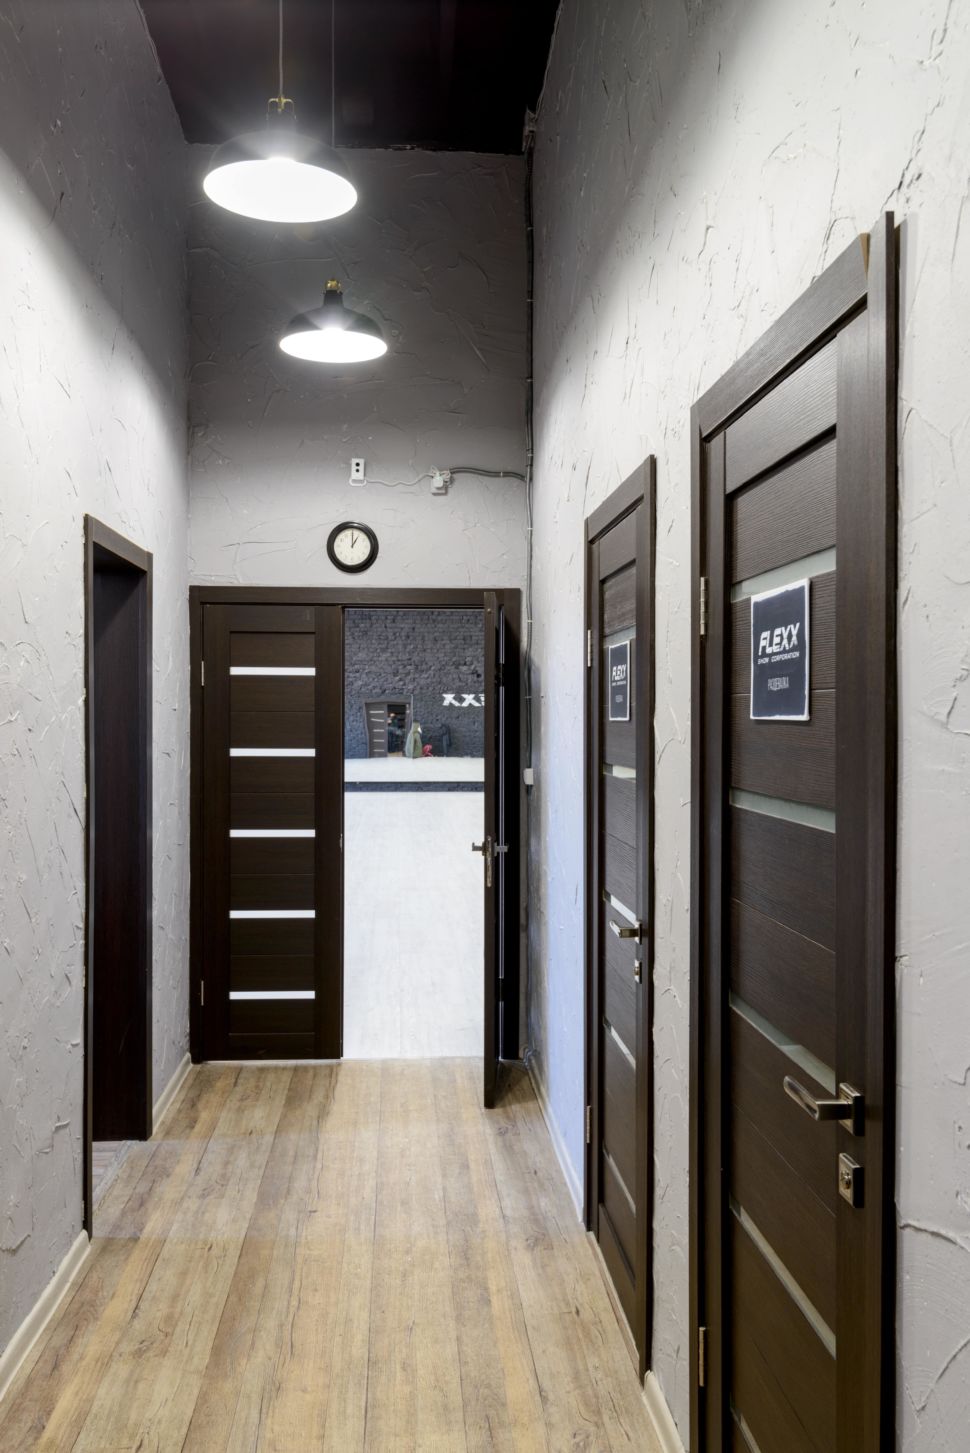 Фотография интерьера коридора 9 кв.м в стиле лофт, серые оттенки, темные межкомнатные двери, черный потолок